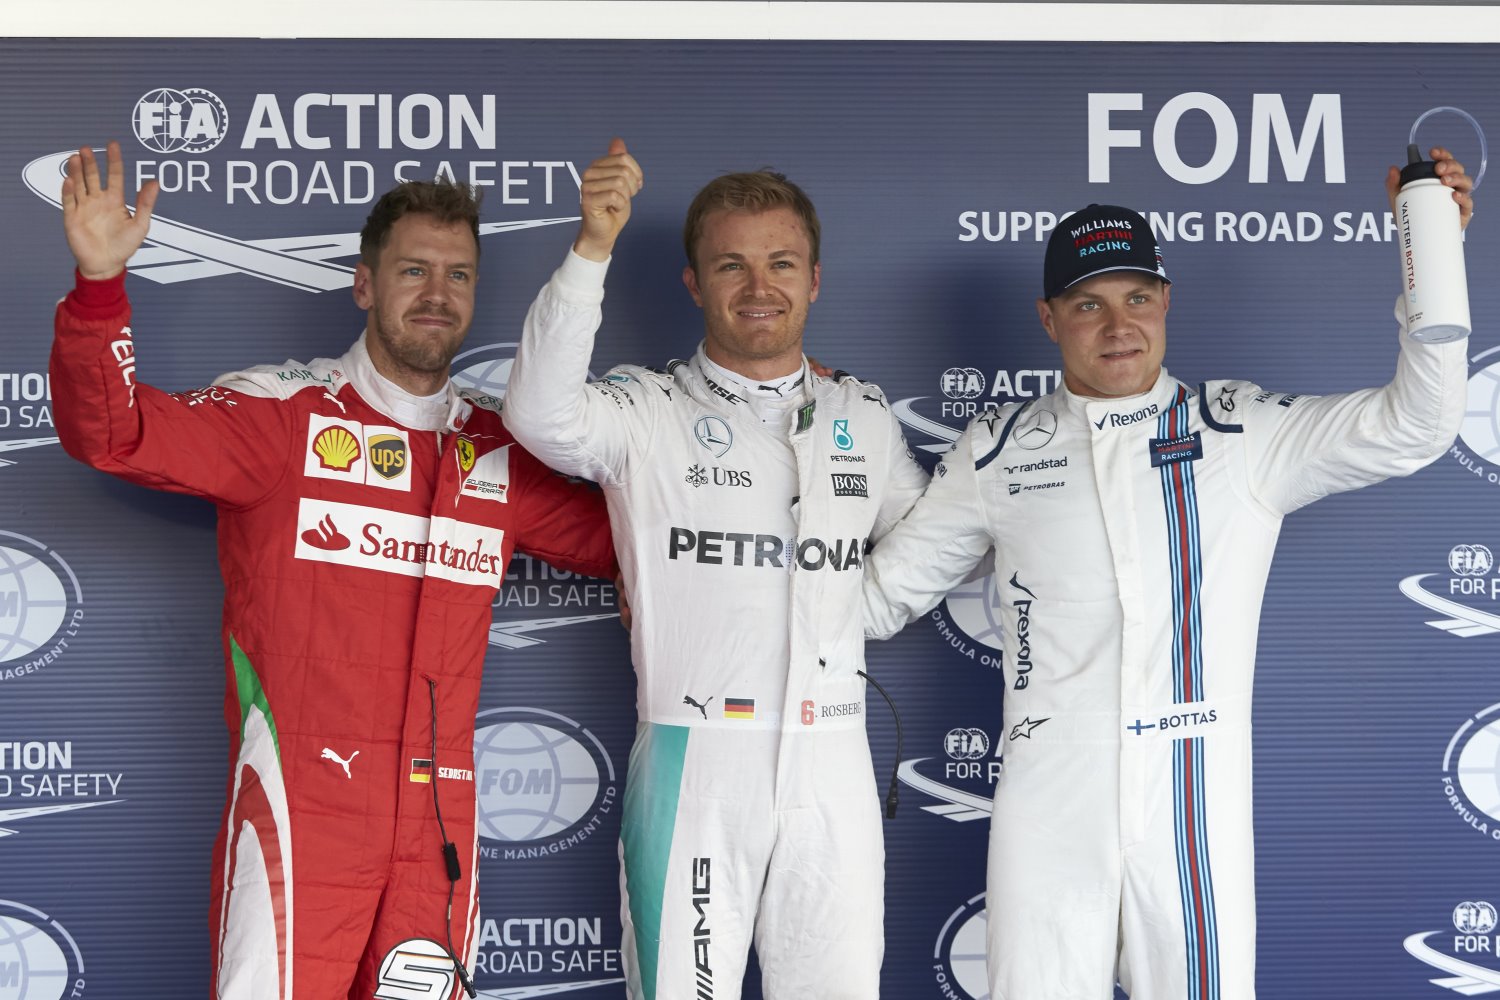 From left, Vettel, Rosberg and Bottas